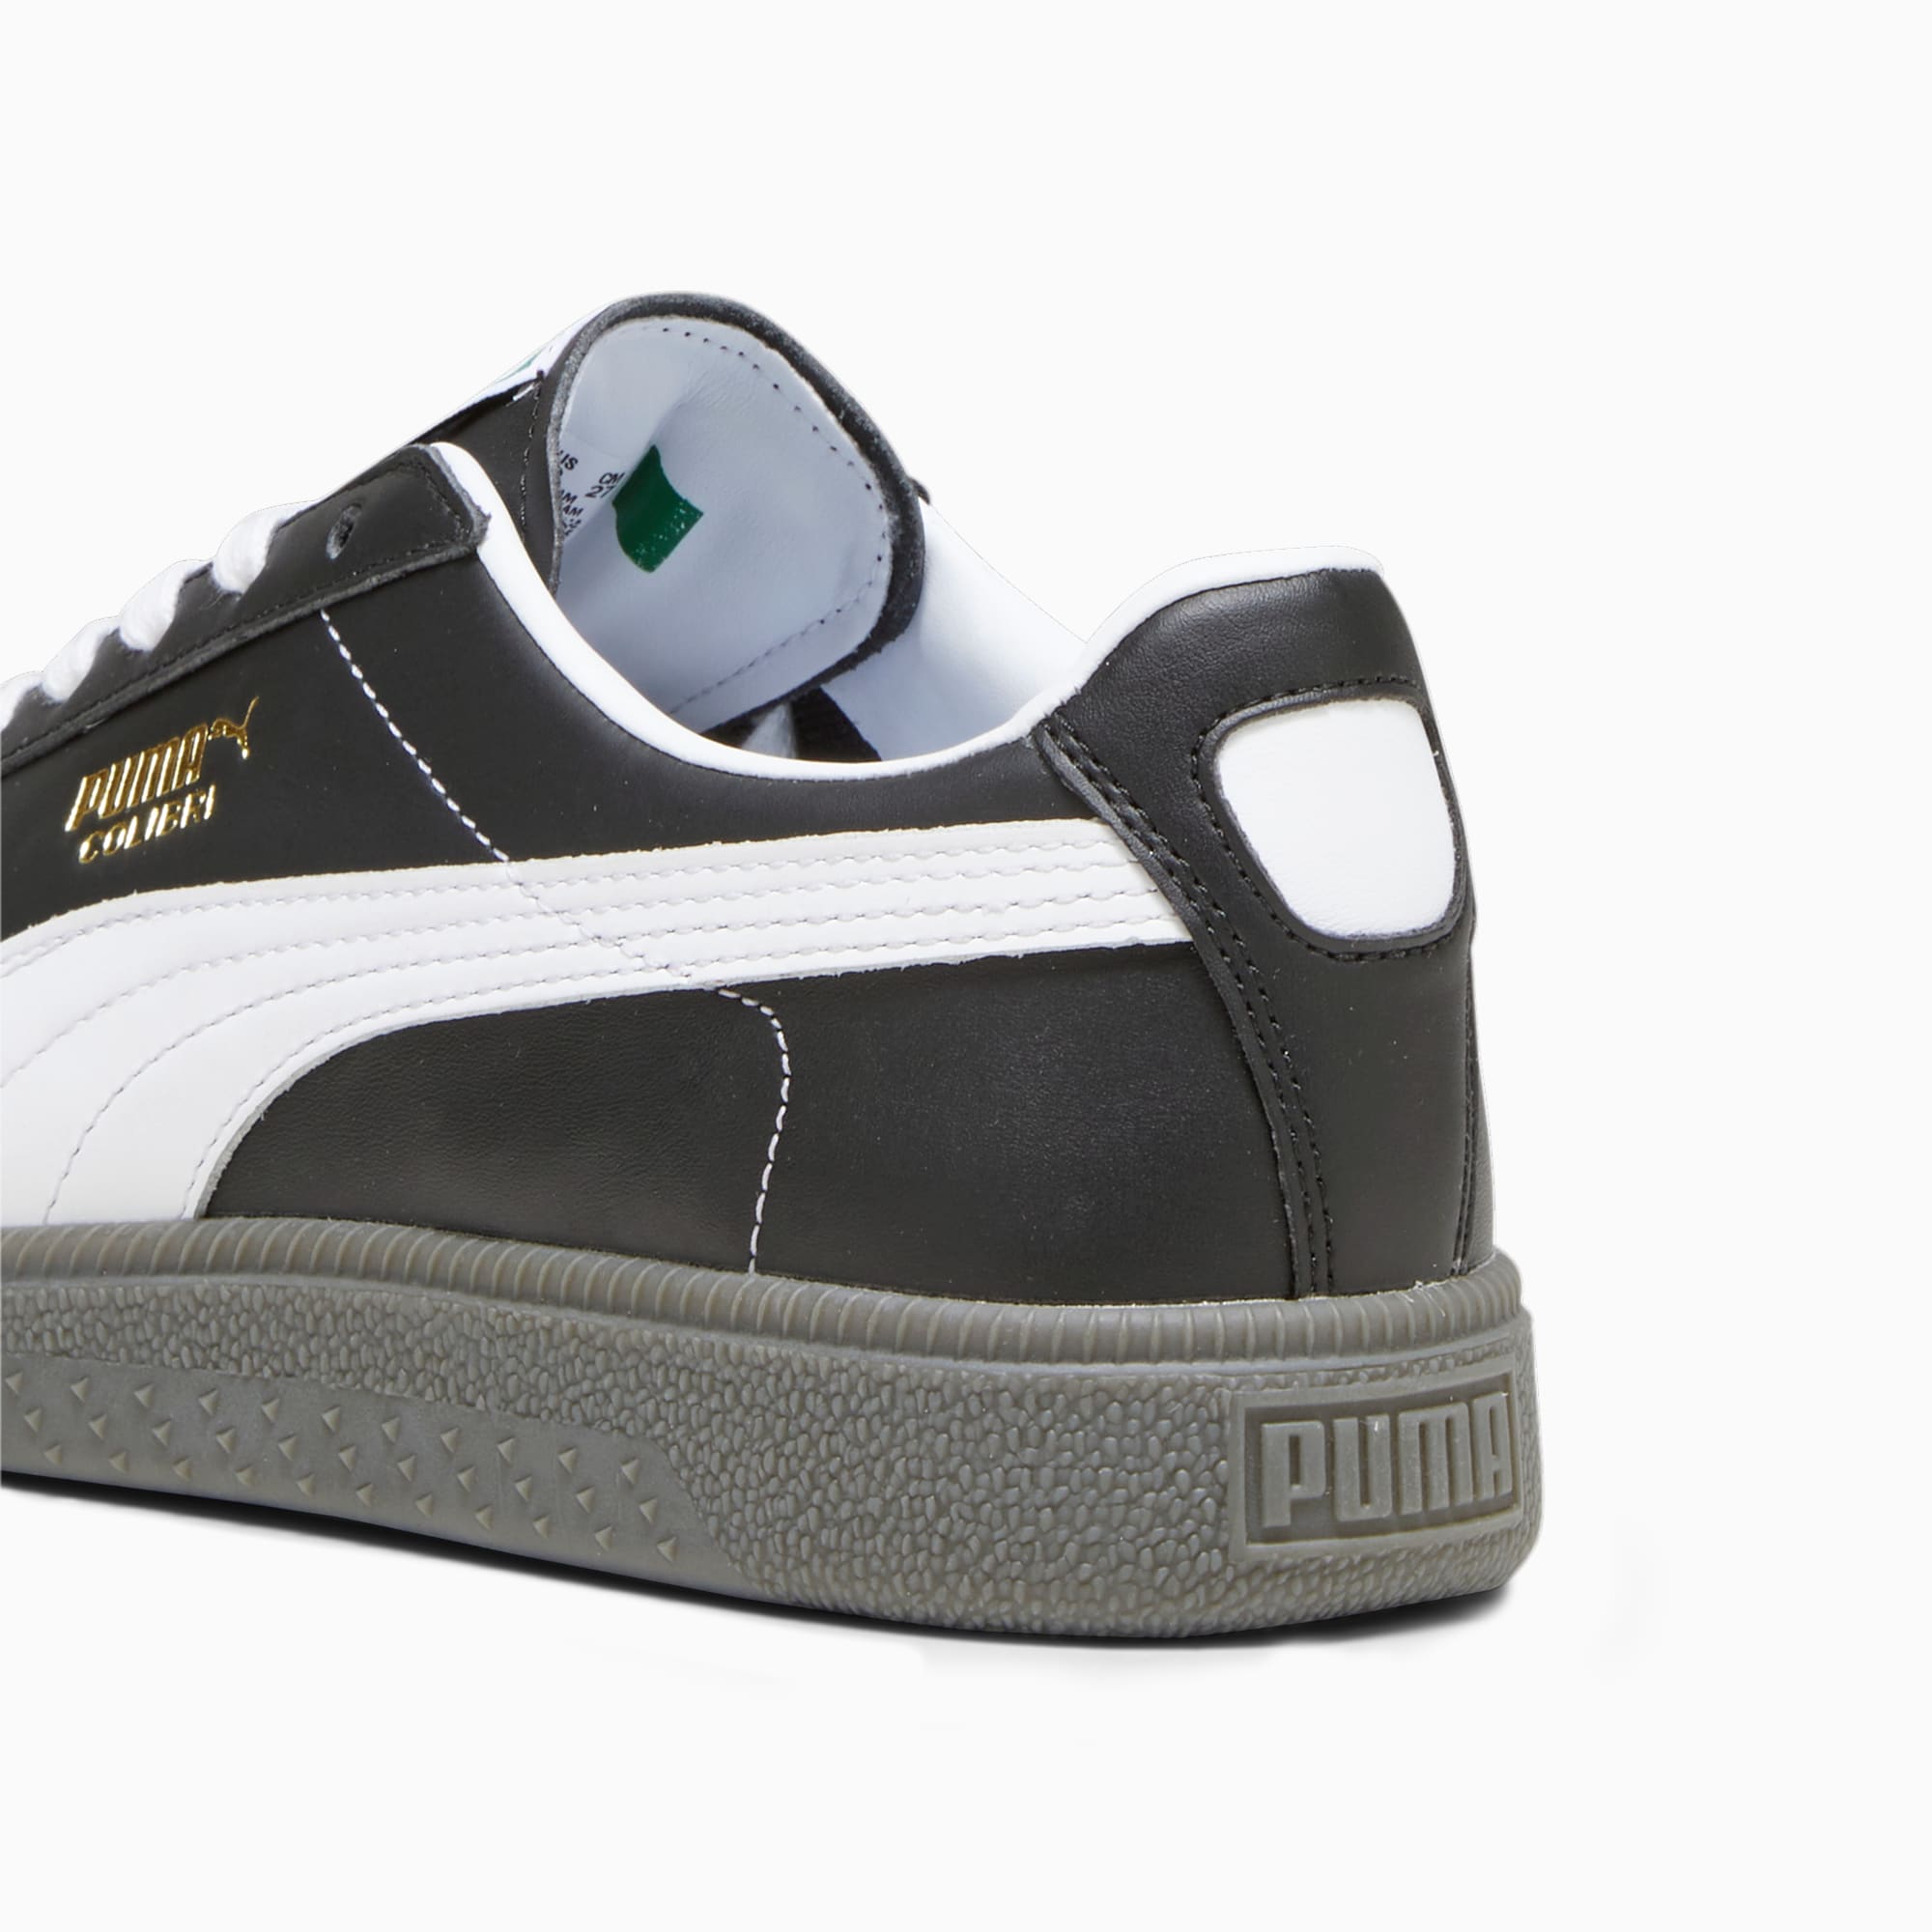 PUMA Colibri OG Sneakers Schuhe, Schwarz/Weiß, Größe: 38, Schuhe